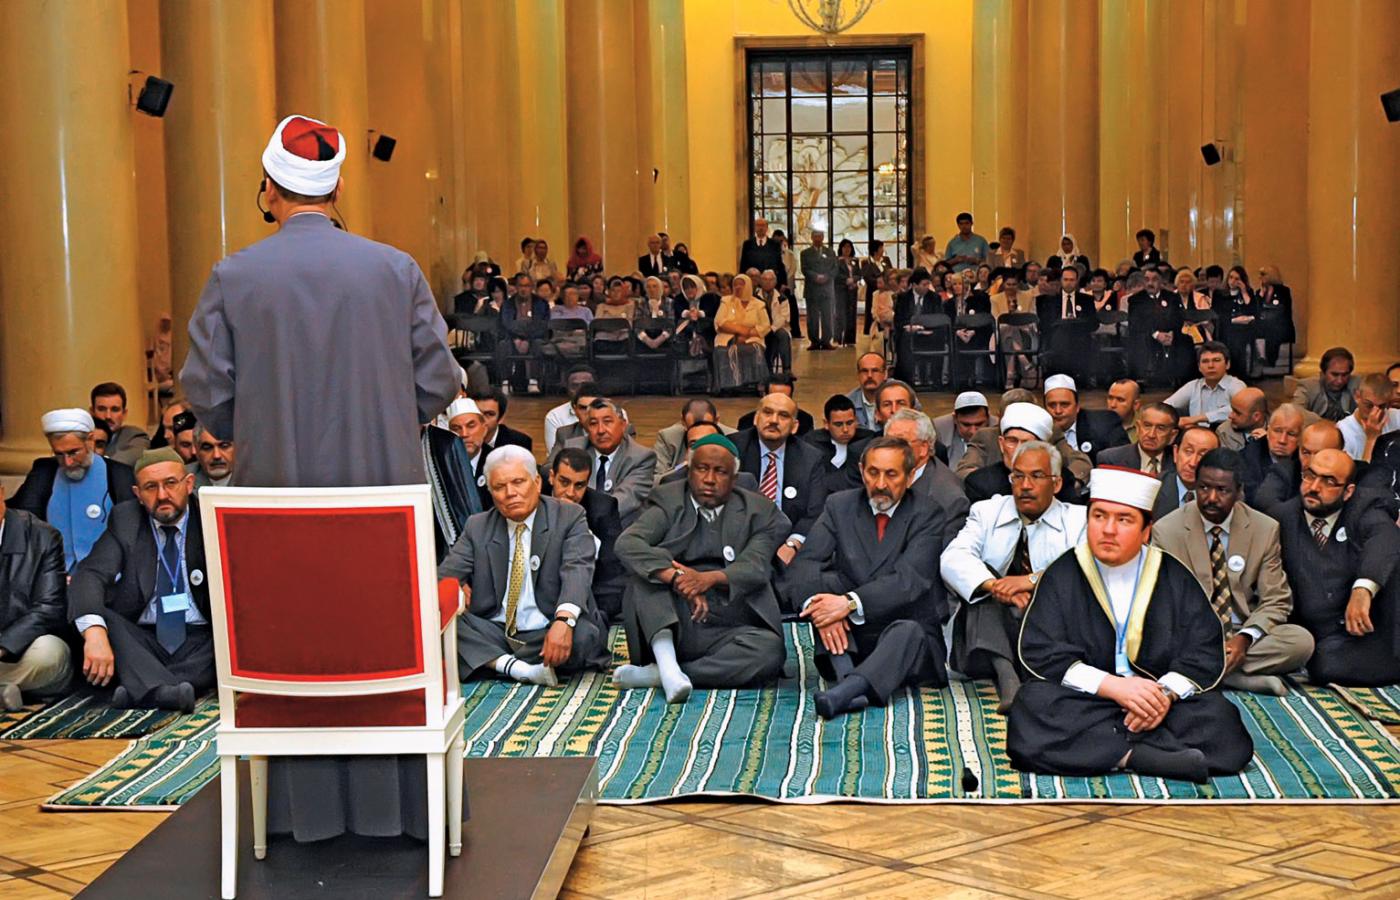 Obchody 80-lecia Muzułmańskiego Związku Religijnego w Polsce, Pałac Kultury i Nauki w Warszawie